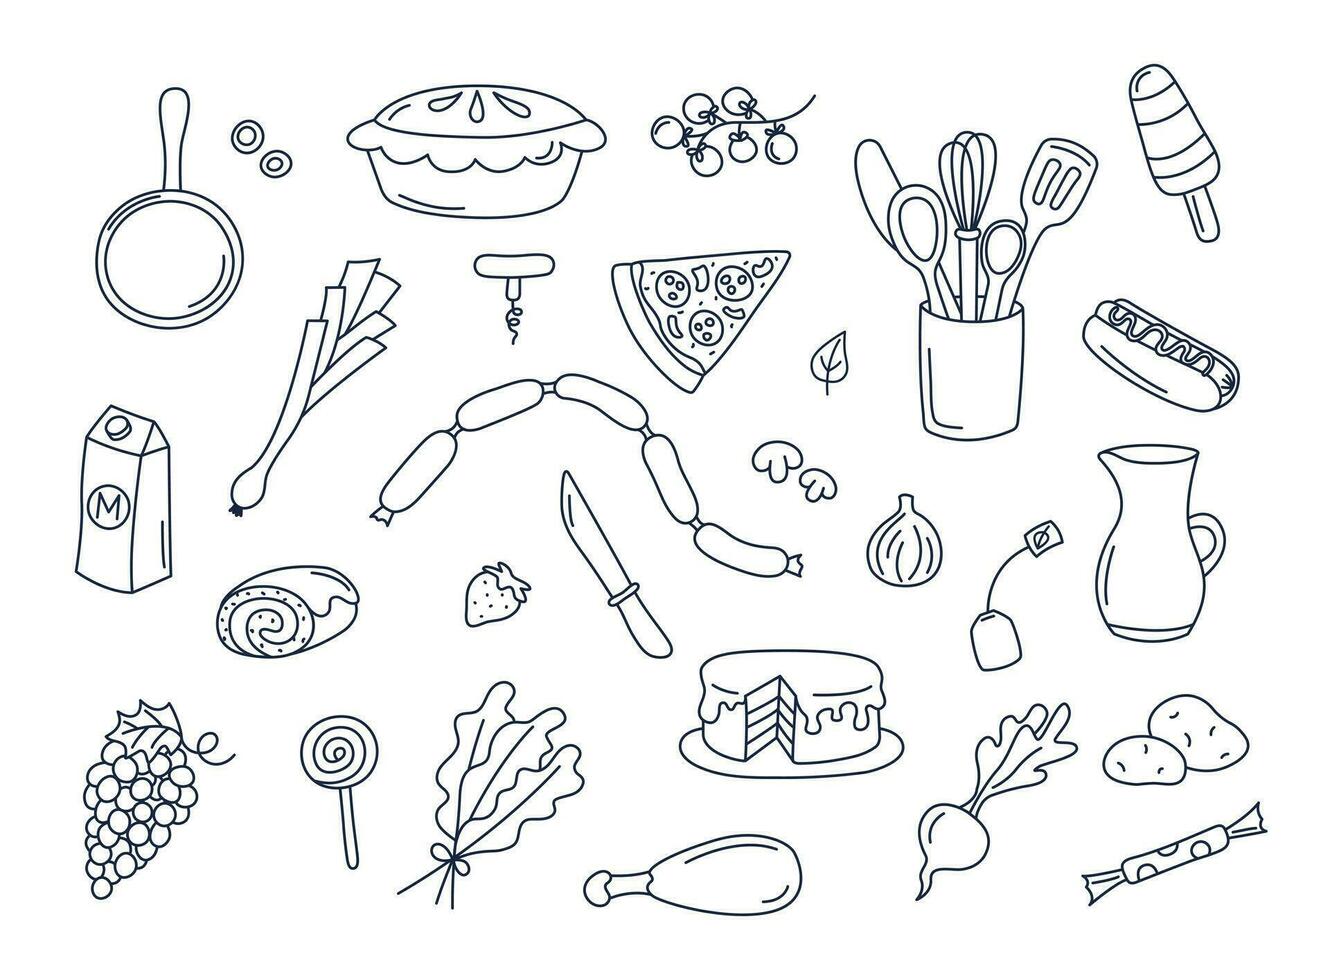 culinaire doodles vector reeks van geïsoleerd Koken elementen. tekening illustraties verzameling van gebruiksvoorwerpen, keukengerei, voedsel, maaltijd ingrediënten, keuken voorwerpen. fruit, groenten, bakkerij